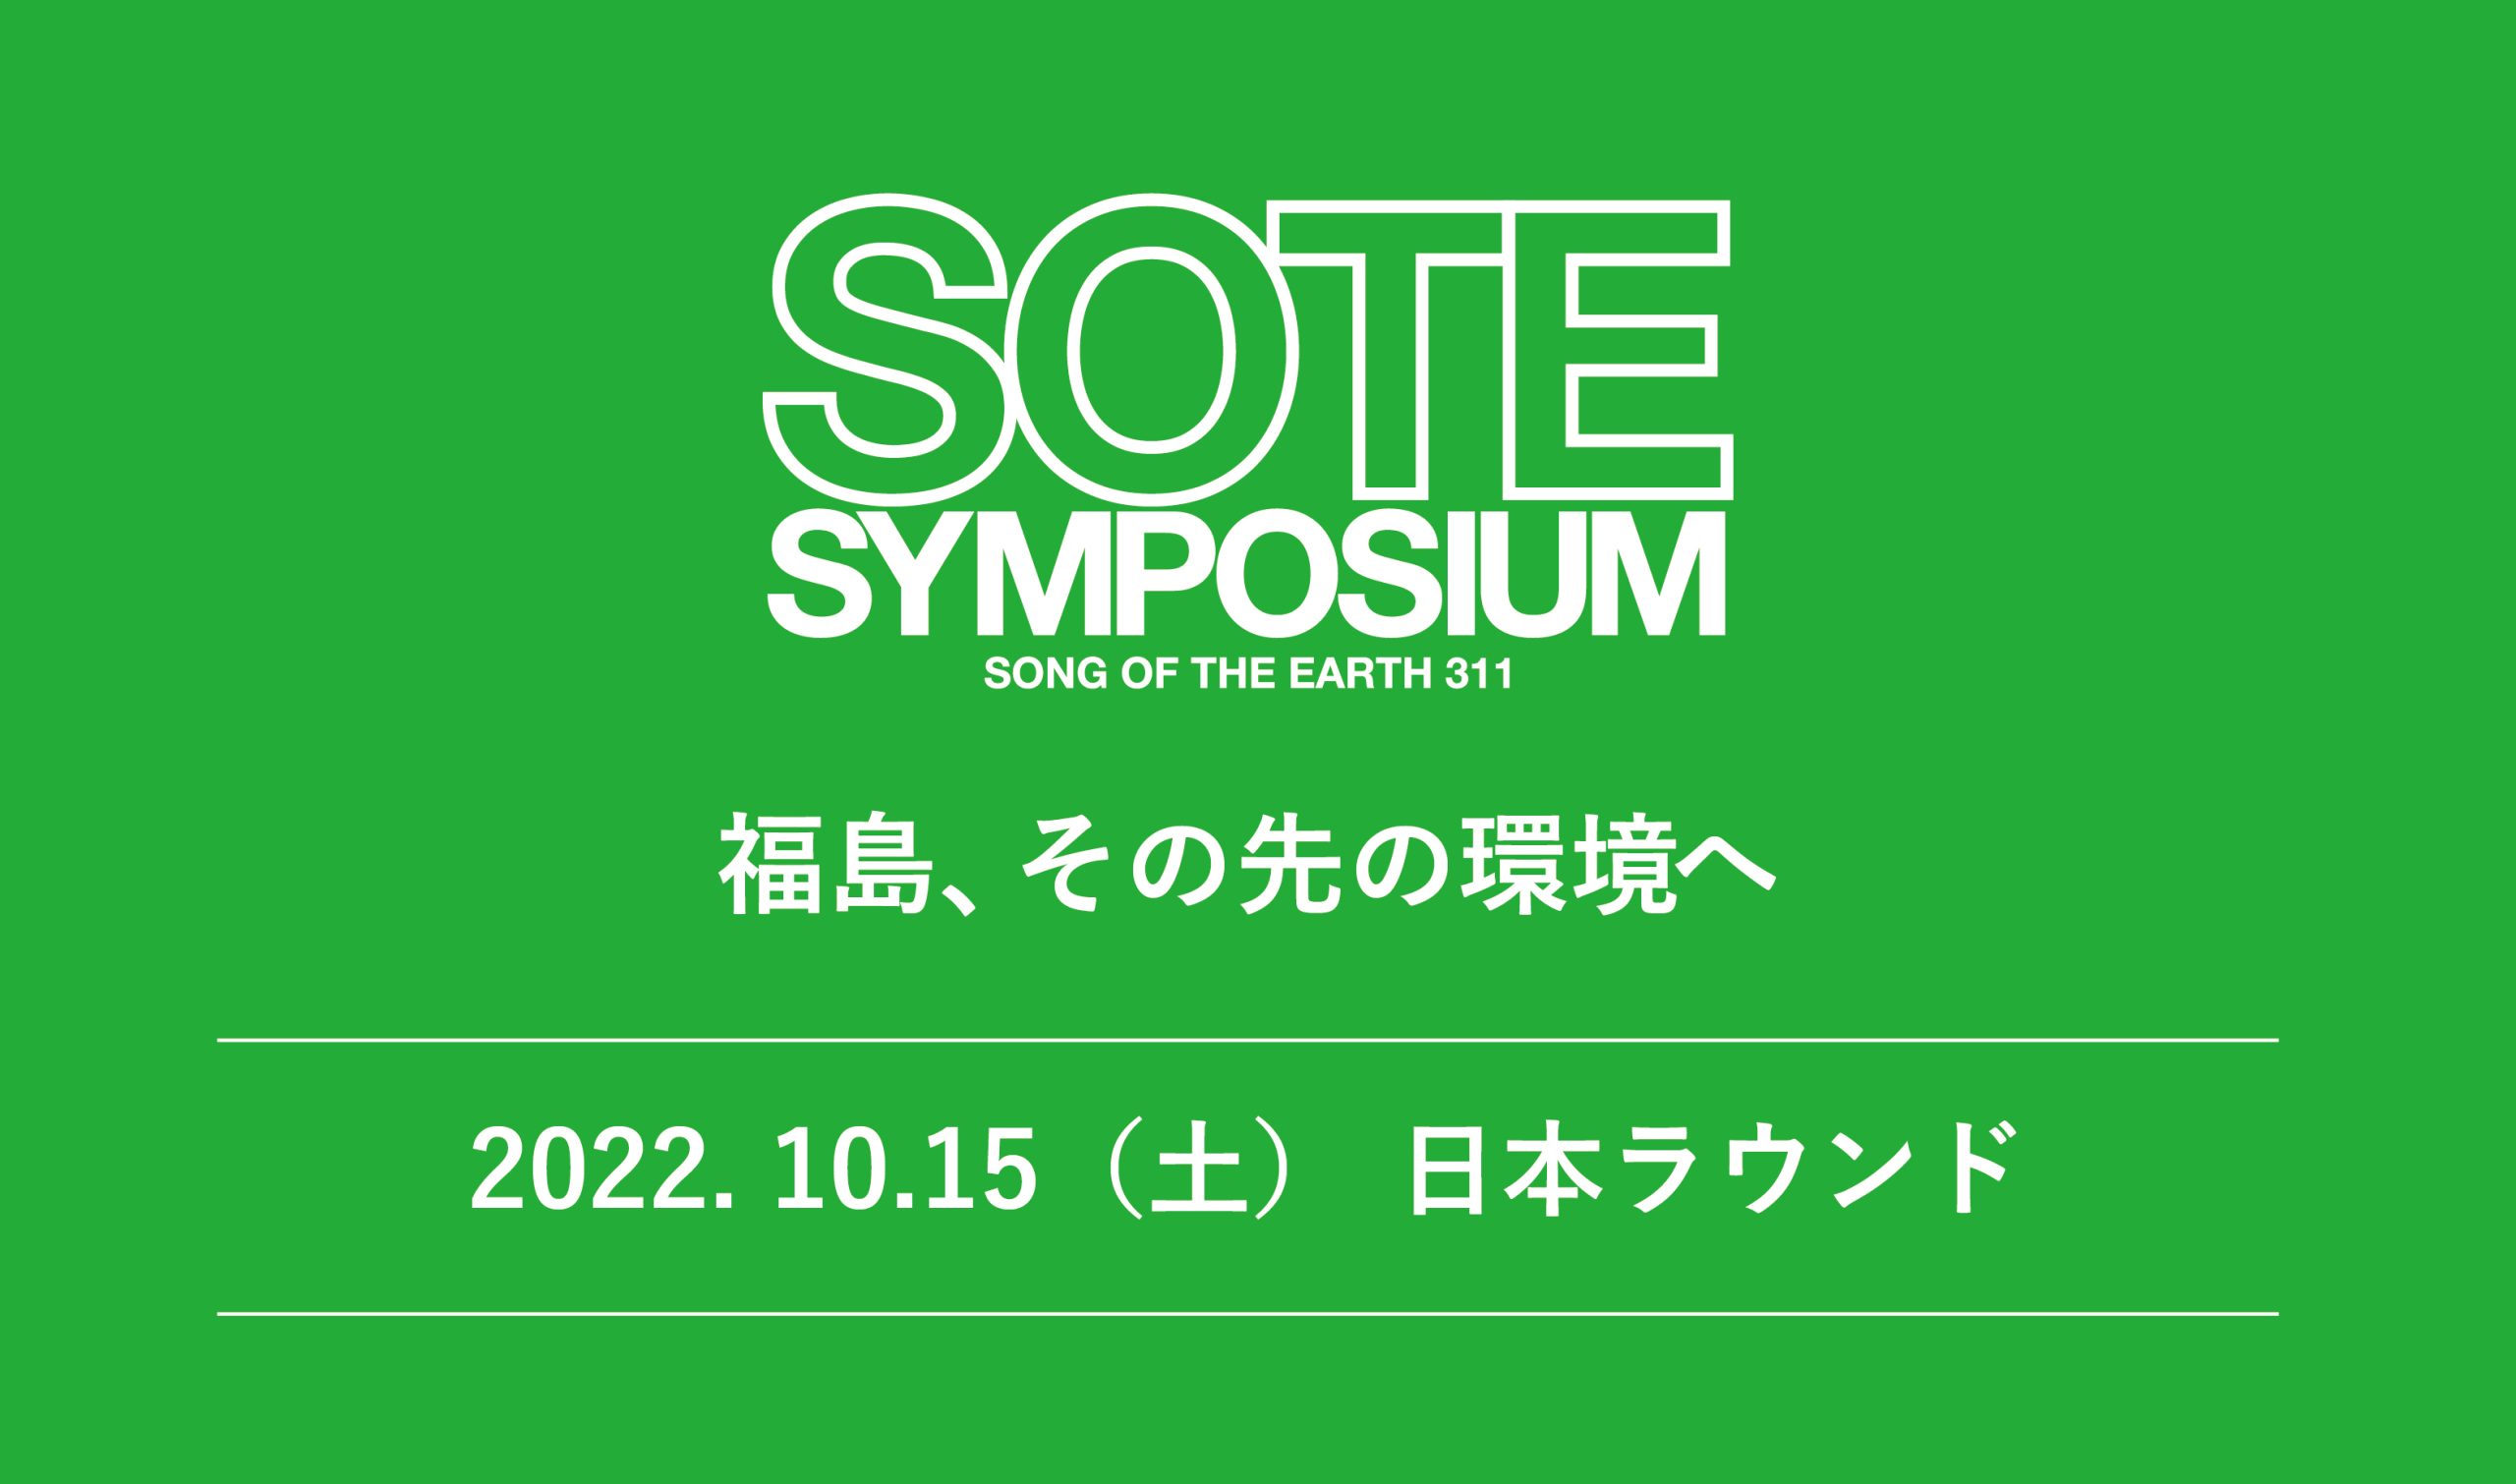 【防災の日】　震災から11年間支援を続けるLOVE FOR NIPPONが、東京会場での『SOTE SYMPOSIUM』を開催決定！